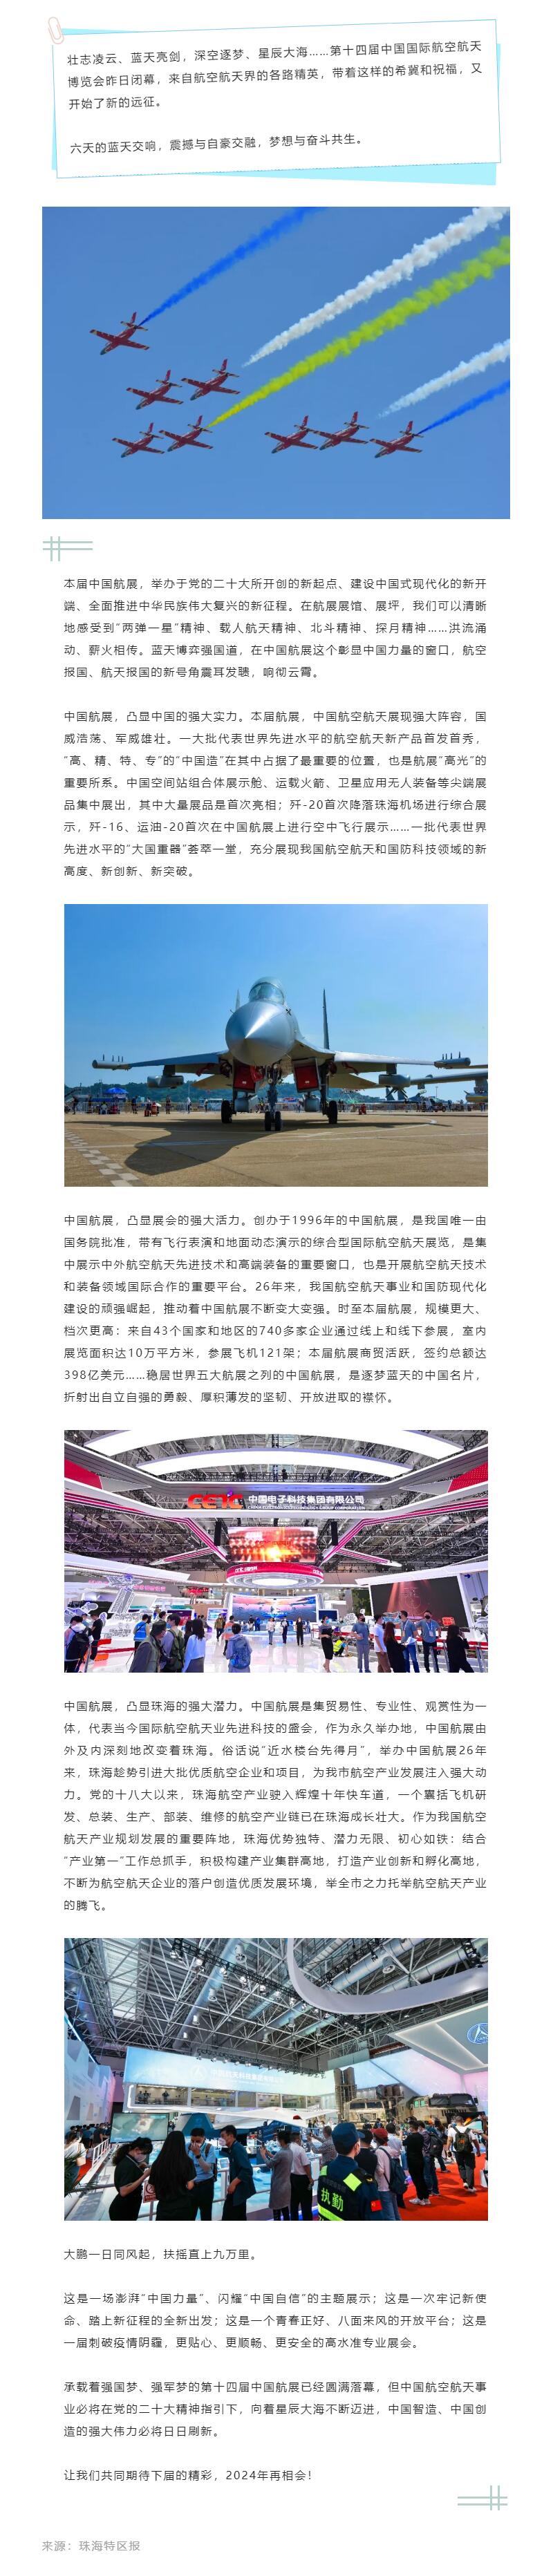 强大实力 强大活力 强大潜力——热烈祝贺第十四届中国航展圆满闭幕